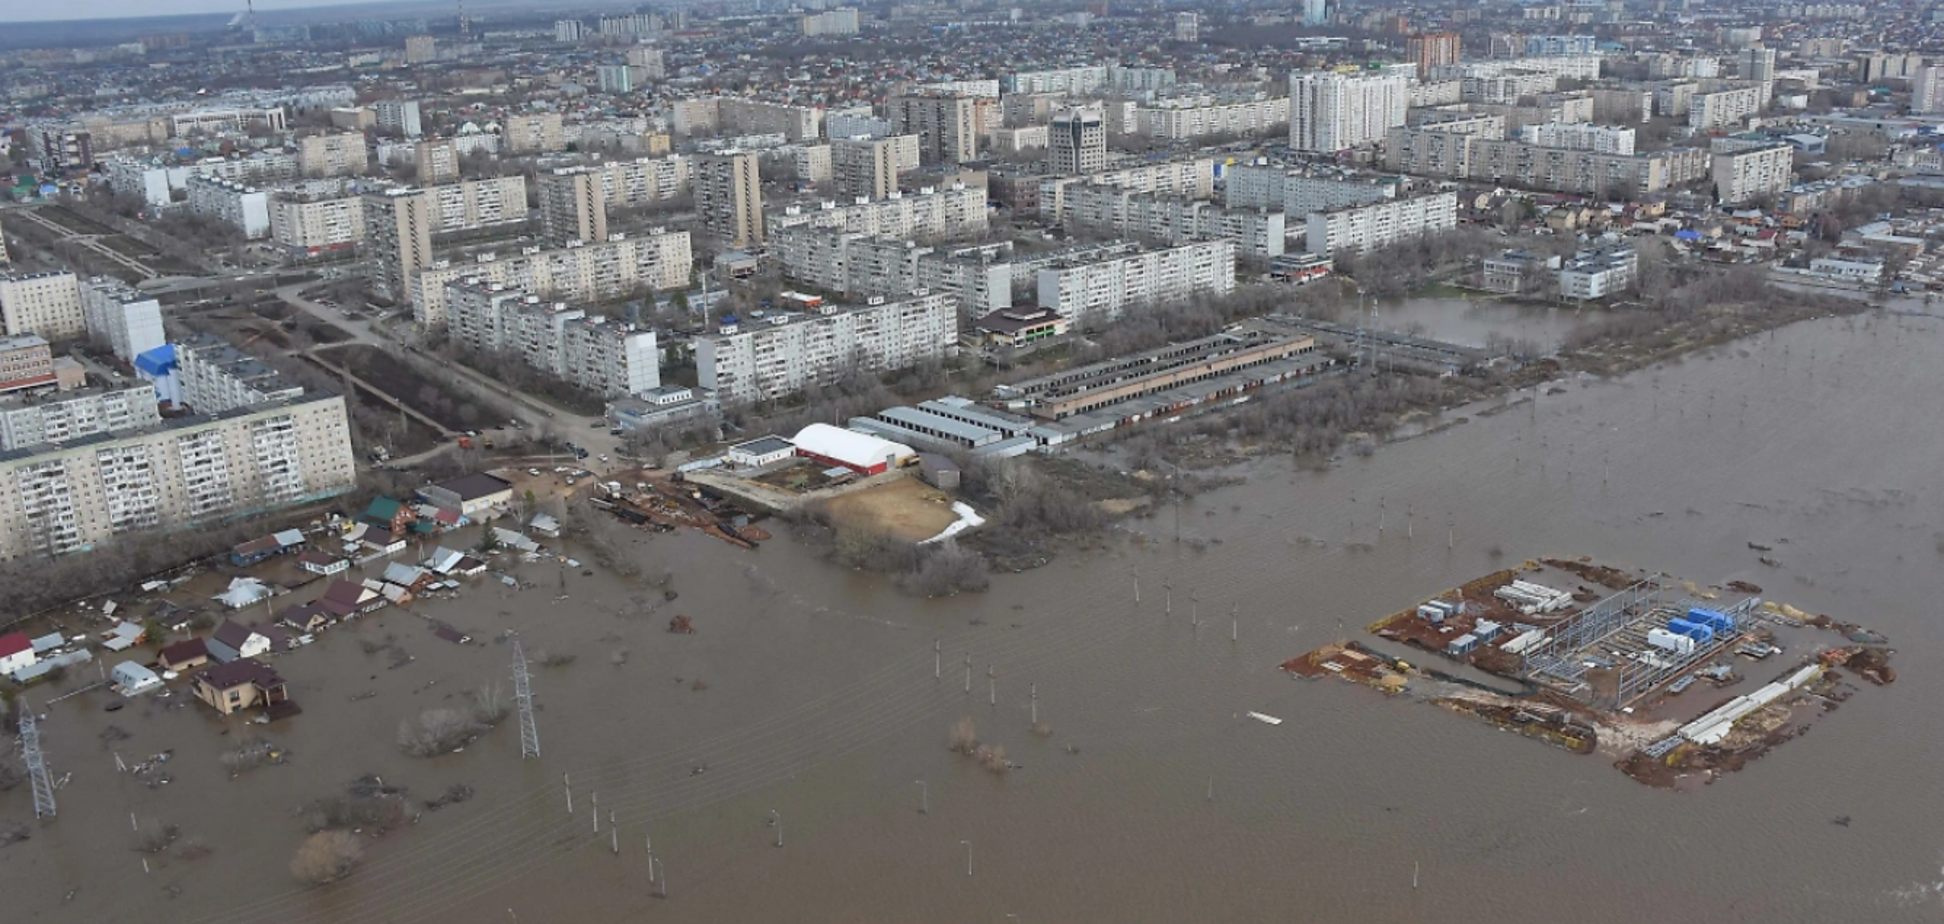 'Положение критическое': в российском Оренбурге объявили массовую эвакуацию из-за потопа, уровень воды поднимается. Видео